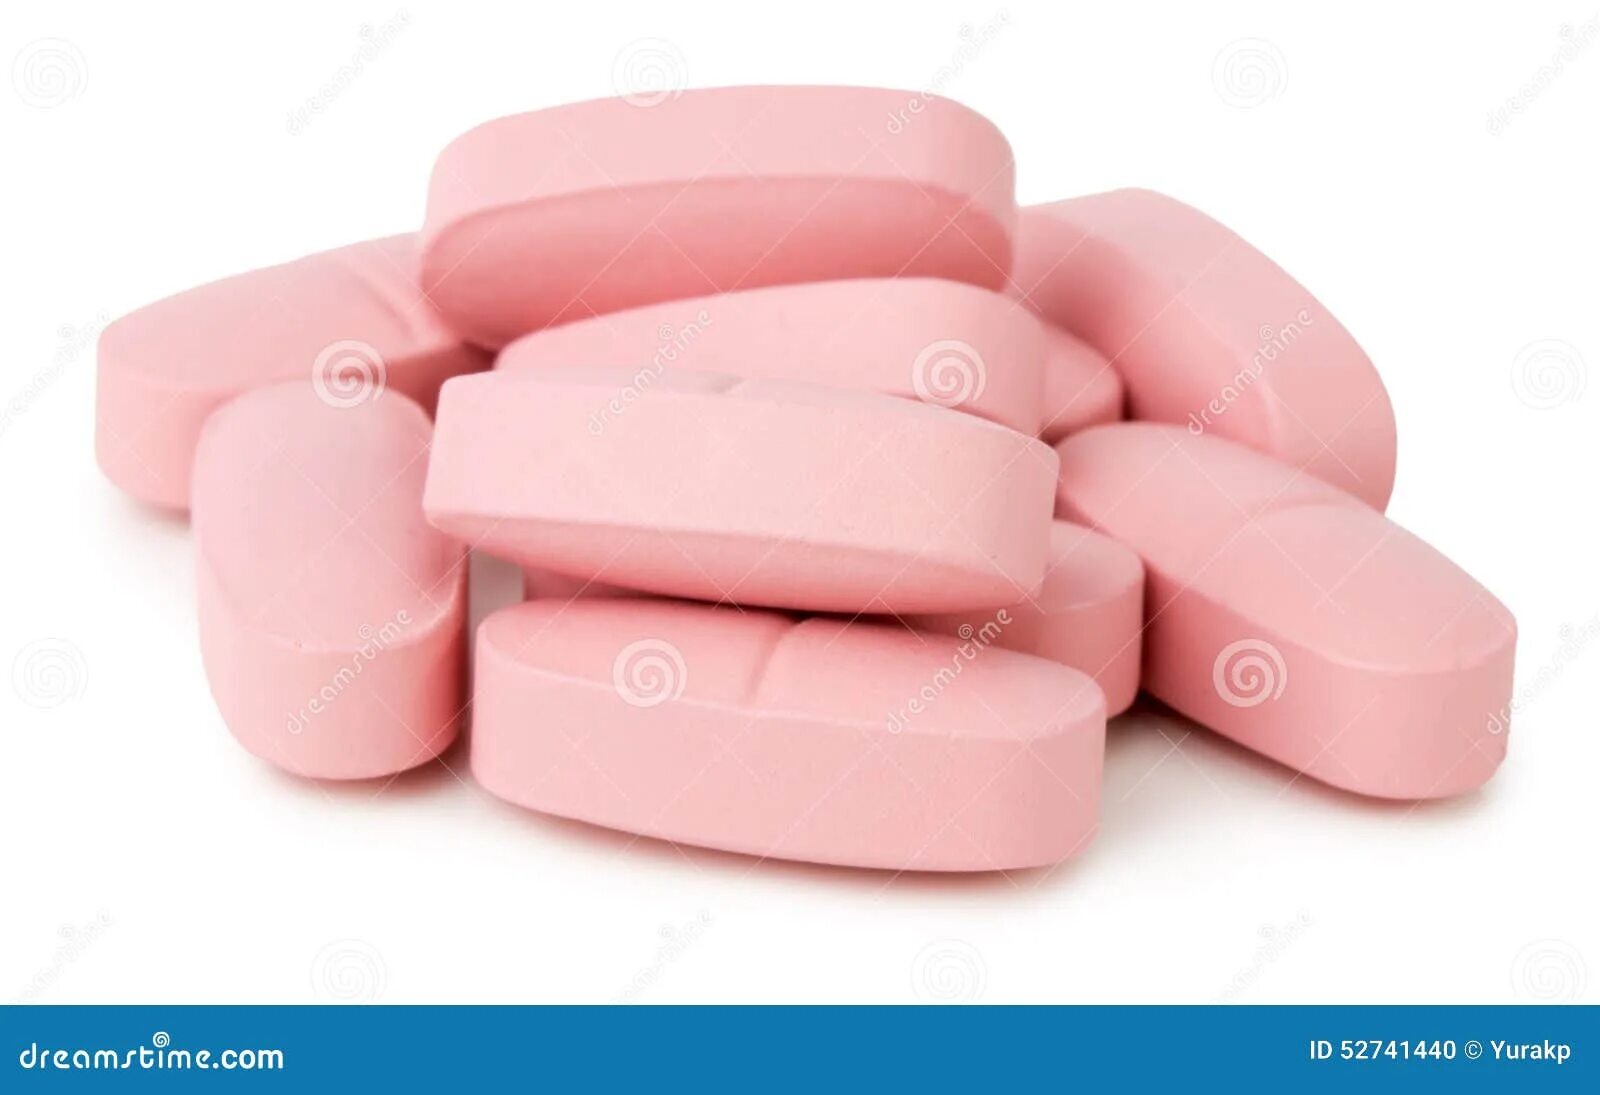 Розовые таблетки. Таблетки розового цвета. Большая розовая таблетка. Розовые плоские таблетки. Розовая упаковка таблетки